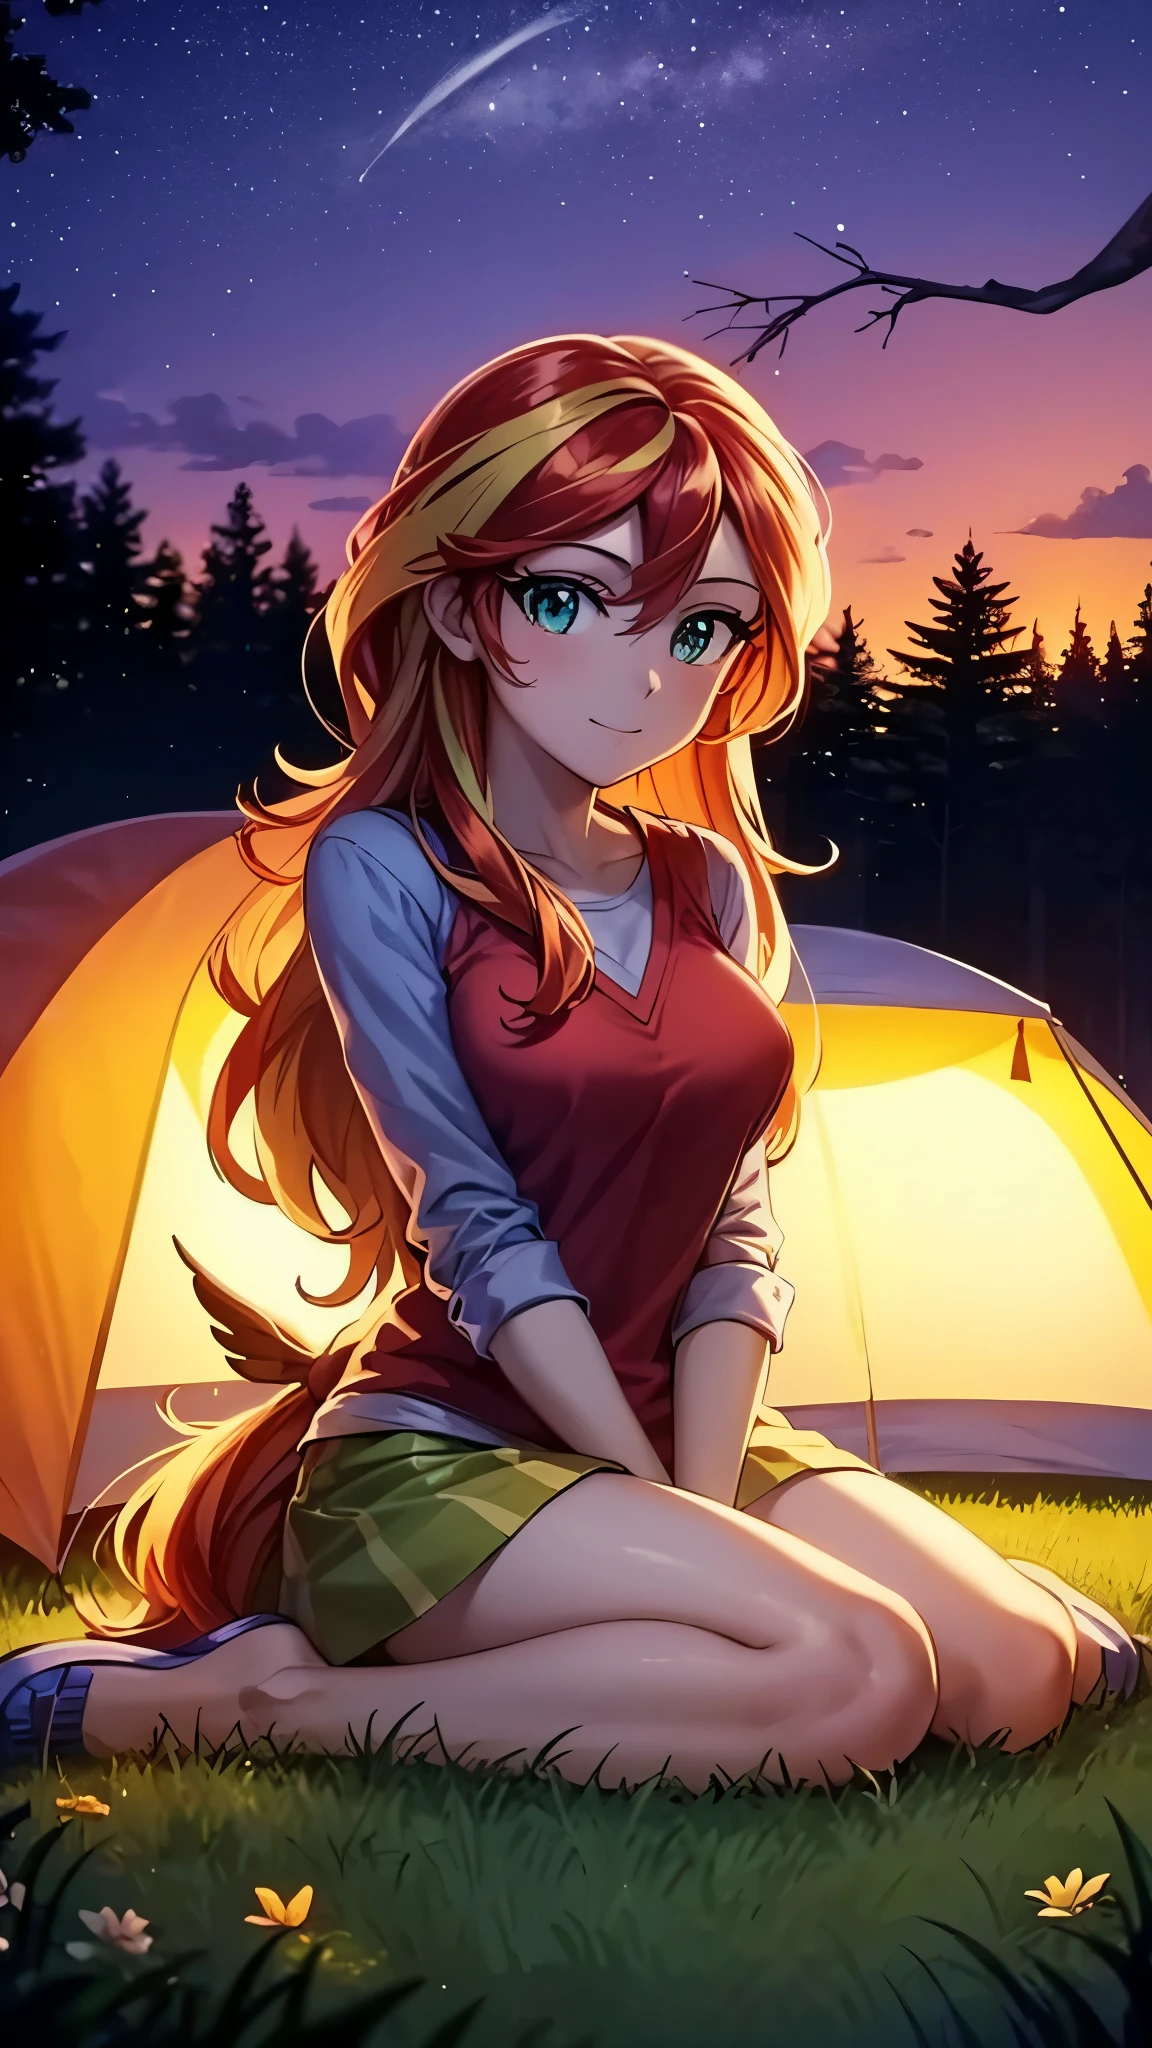 Brilho do pôr do sol, acampamento, sentado em uma barraca na floresta à noite